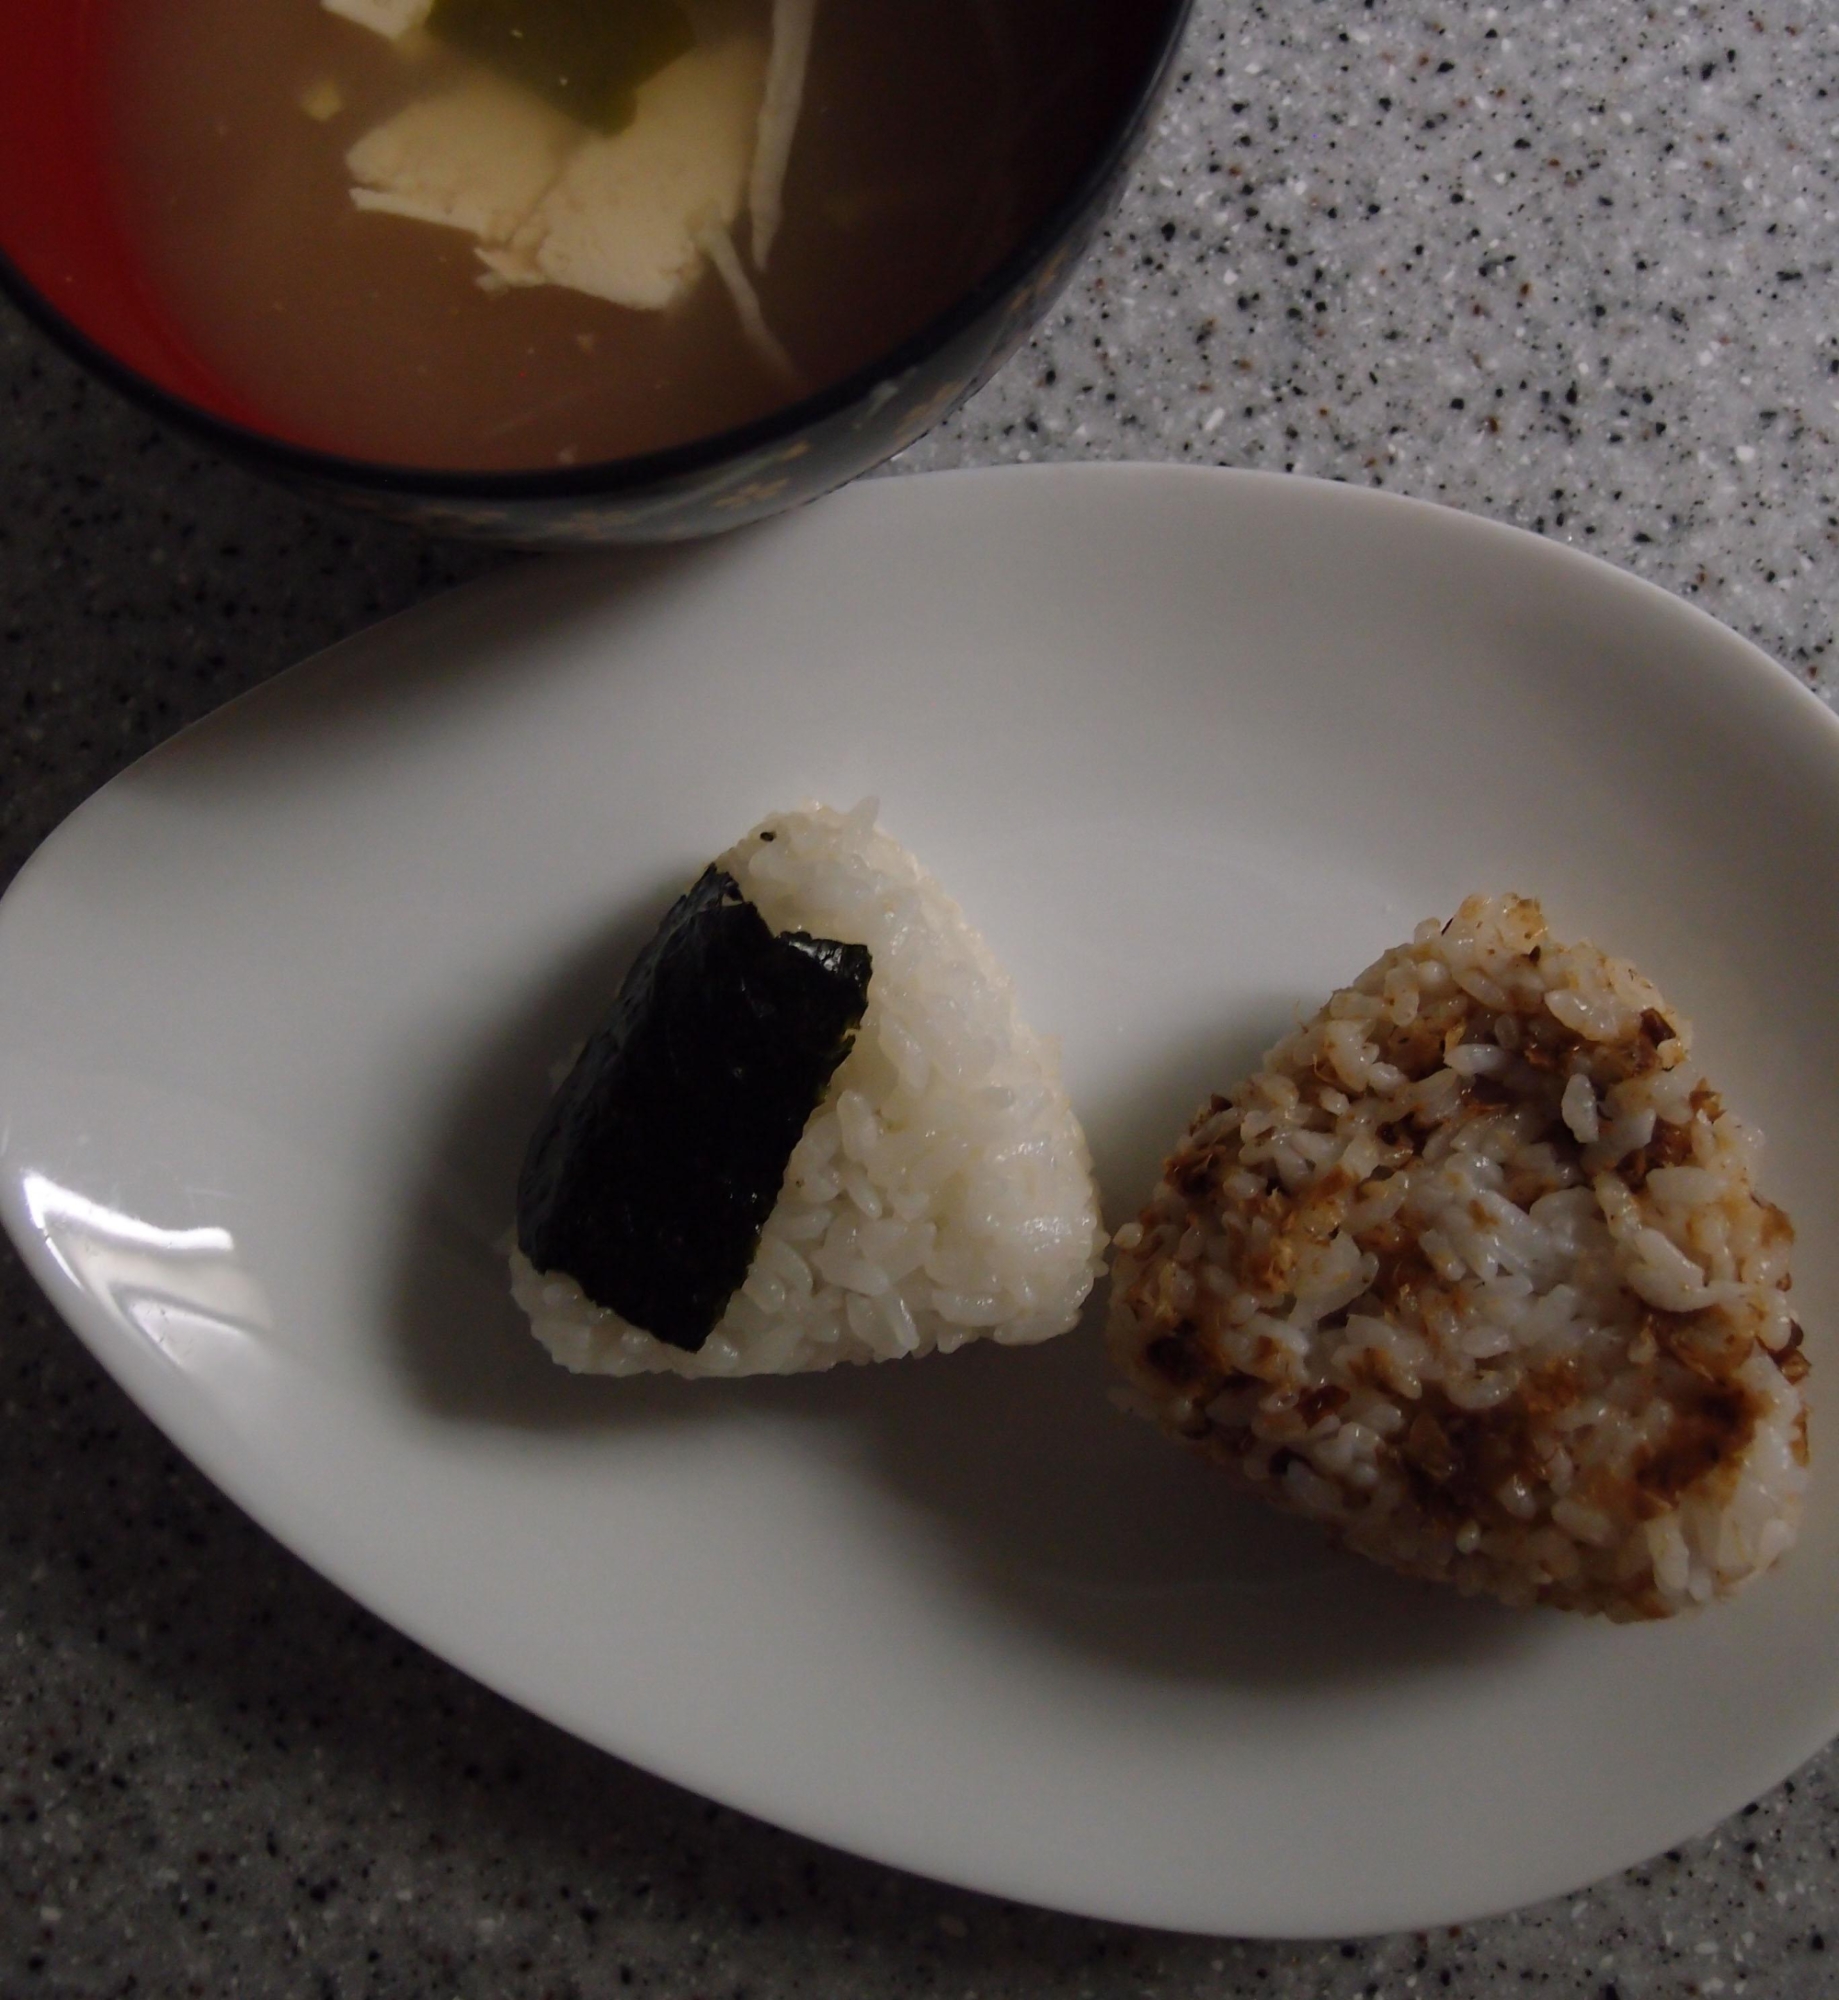 豆腐とワカメのお味噌汁とおにぎりの朝食